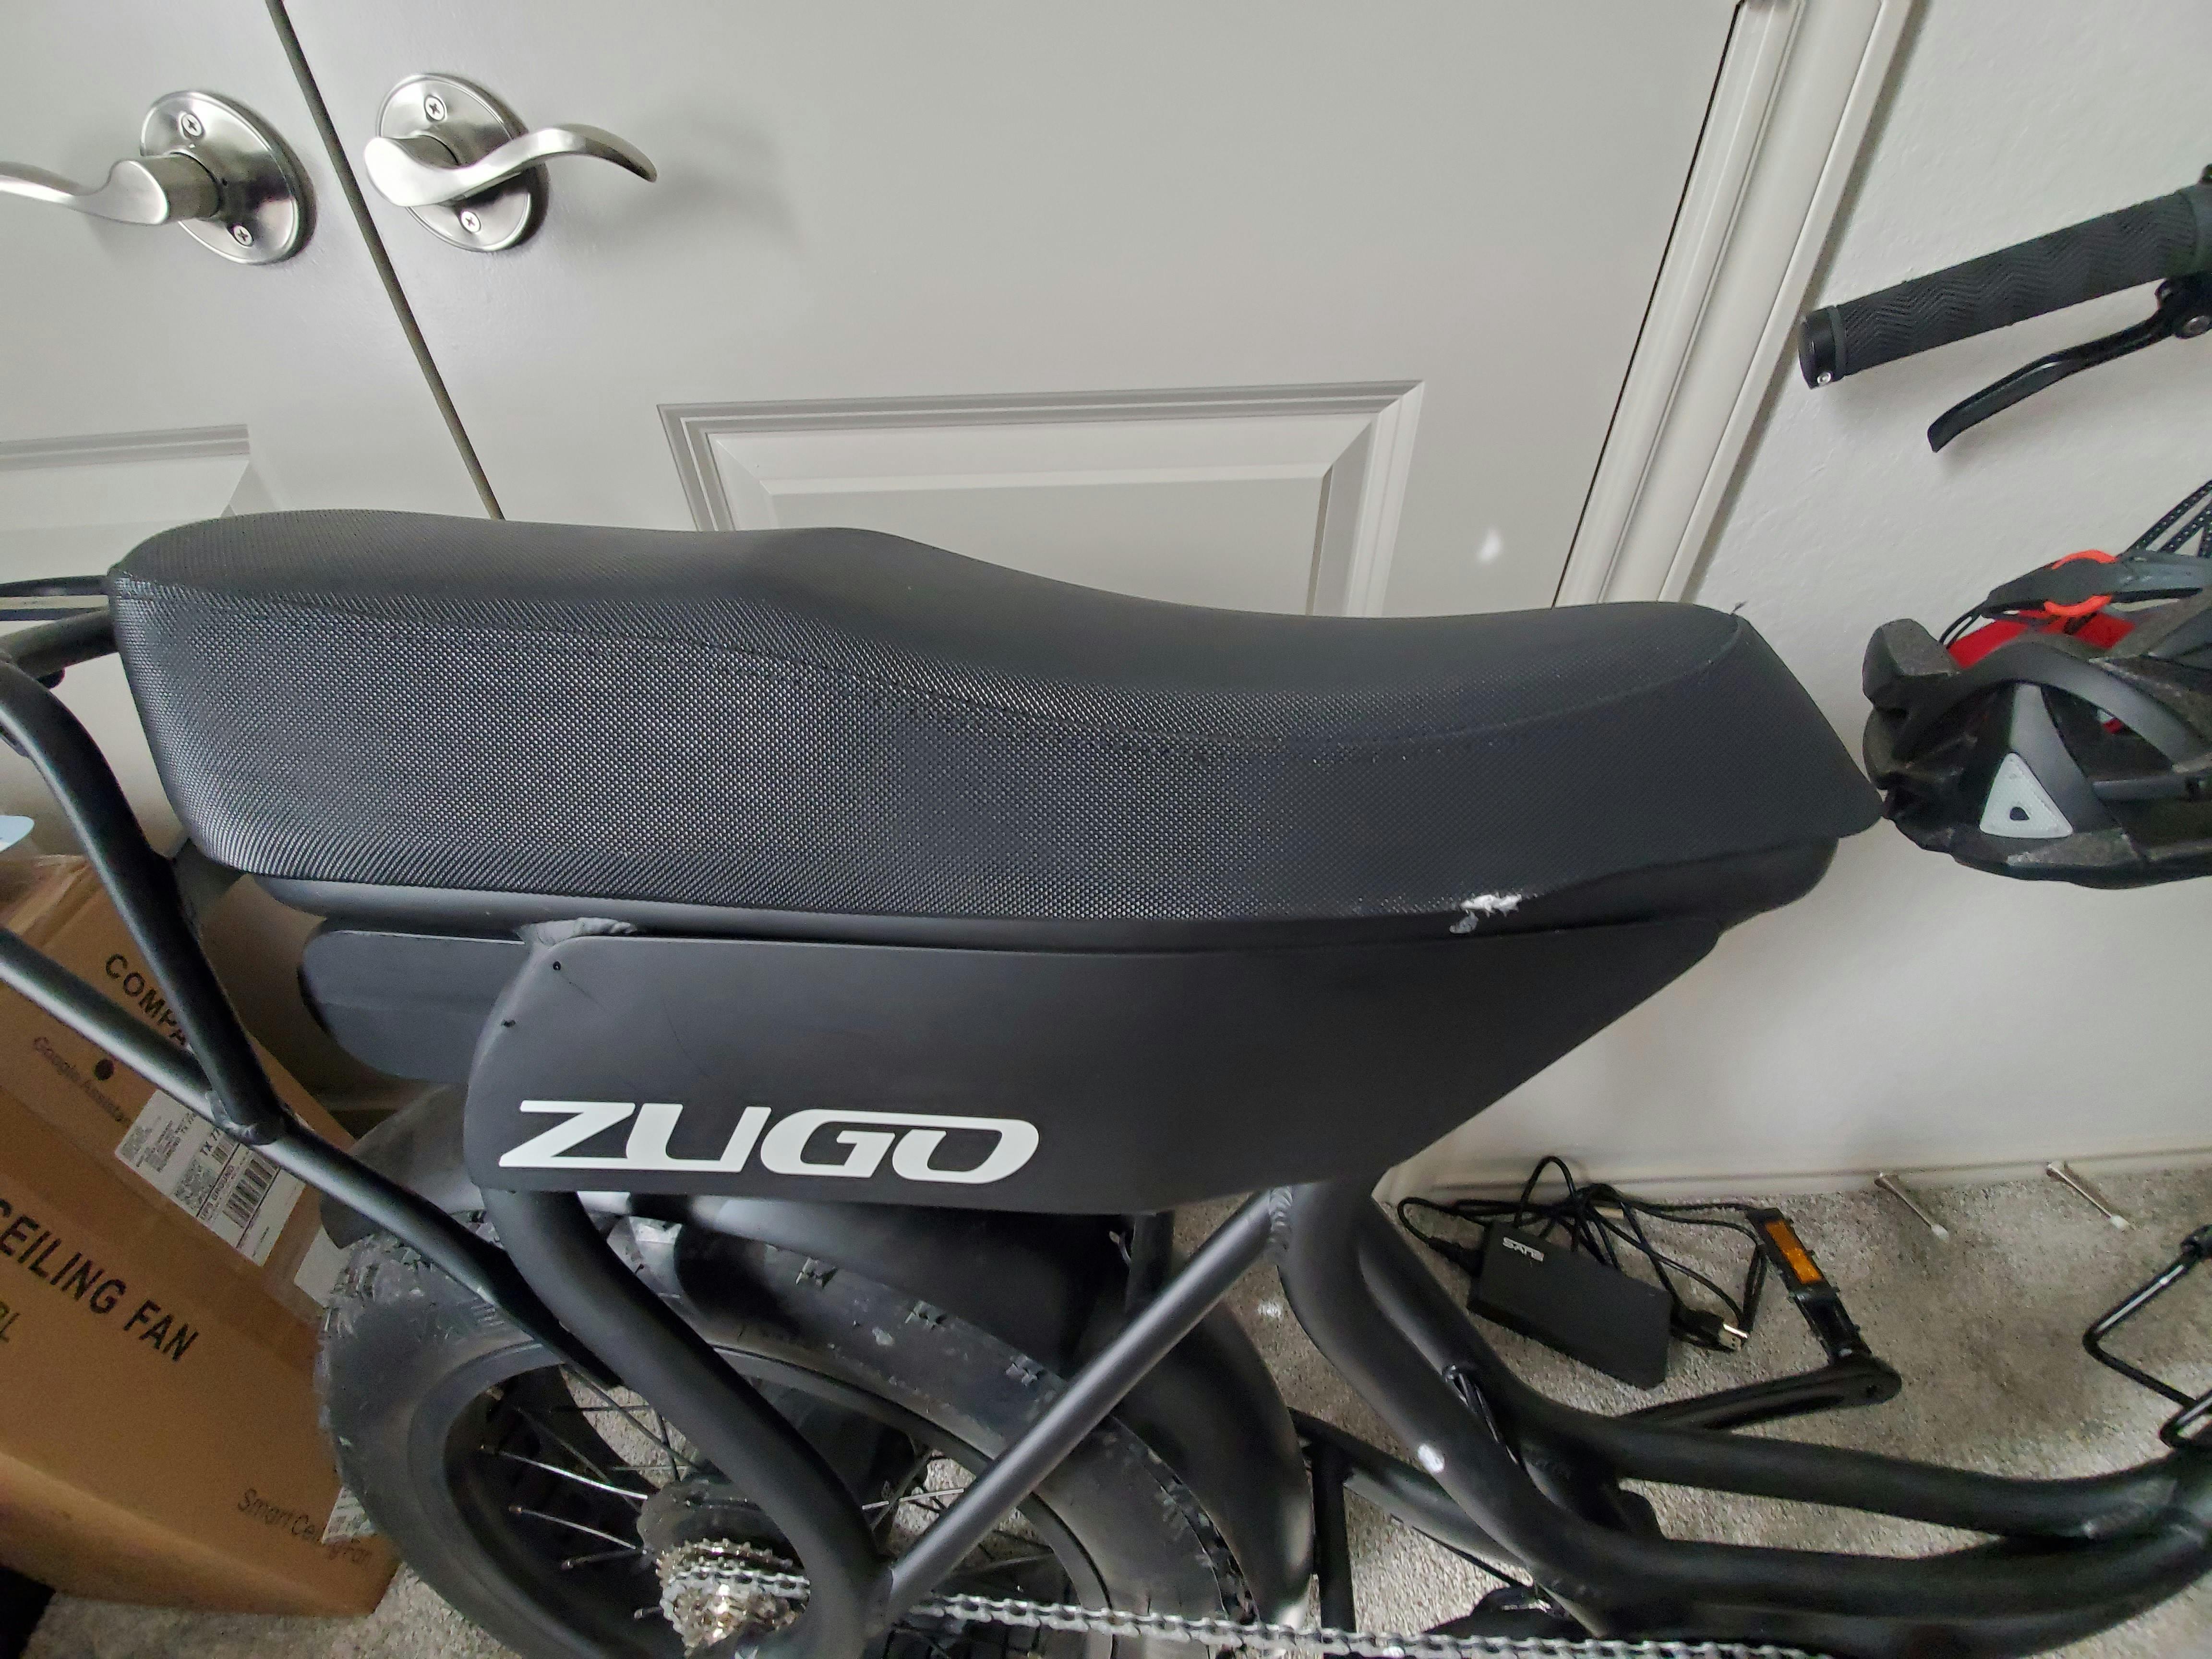 zugo electric bike review